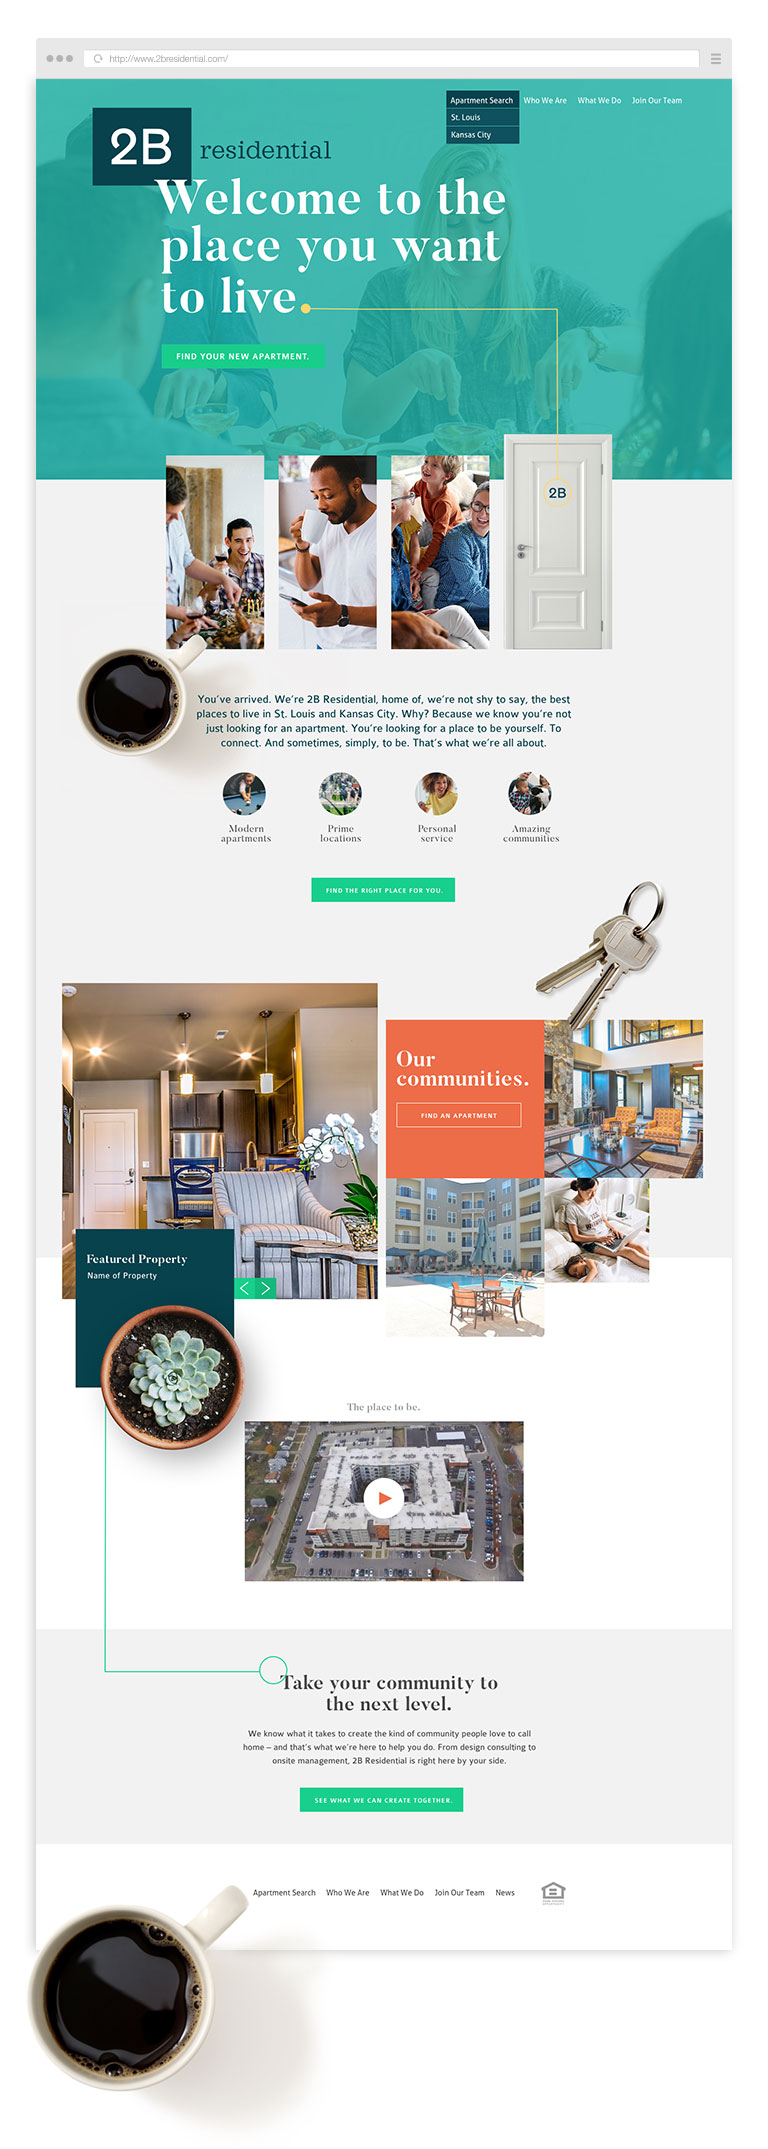 2B Residential's Website Design